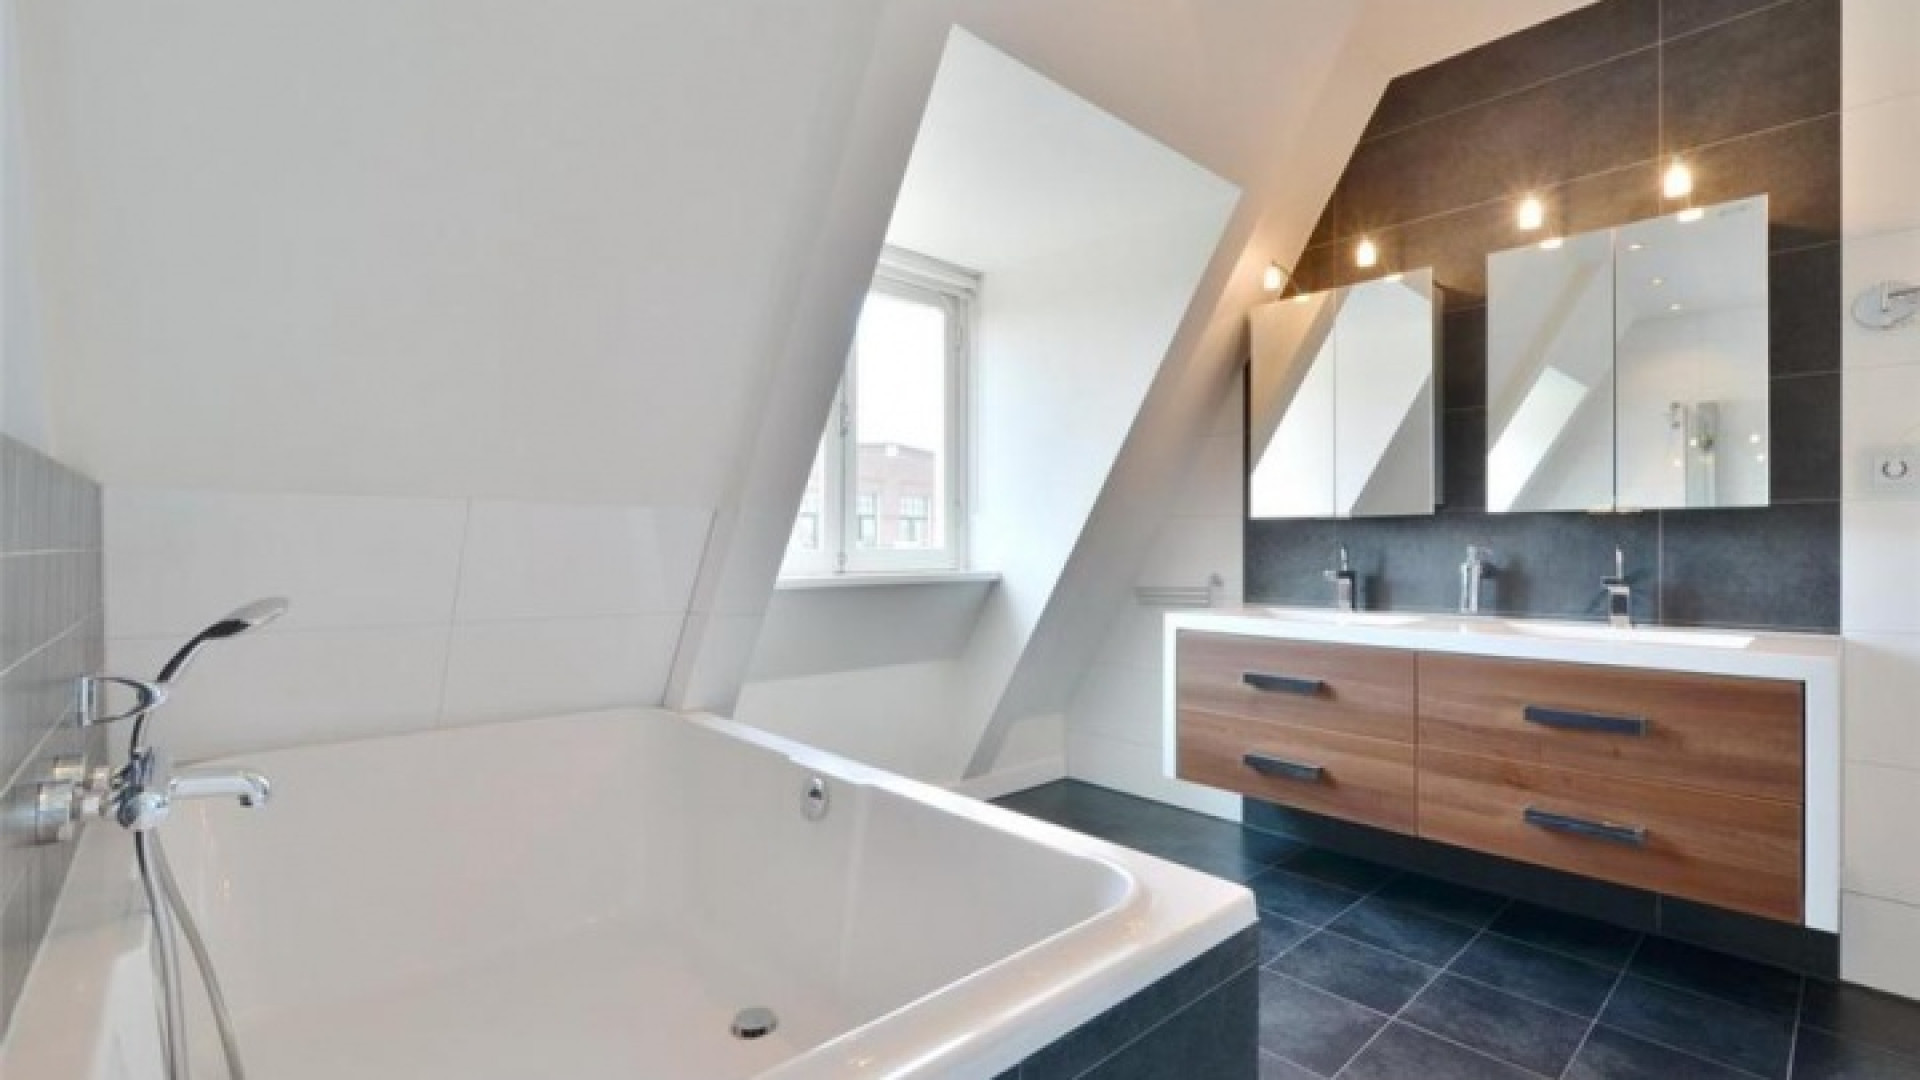 Frank Rijkaard zoekt huurder voor zijn luxe dubbele bovenhuis. Zie foto's 20